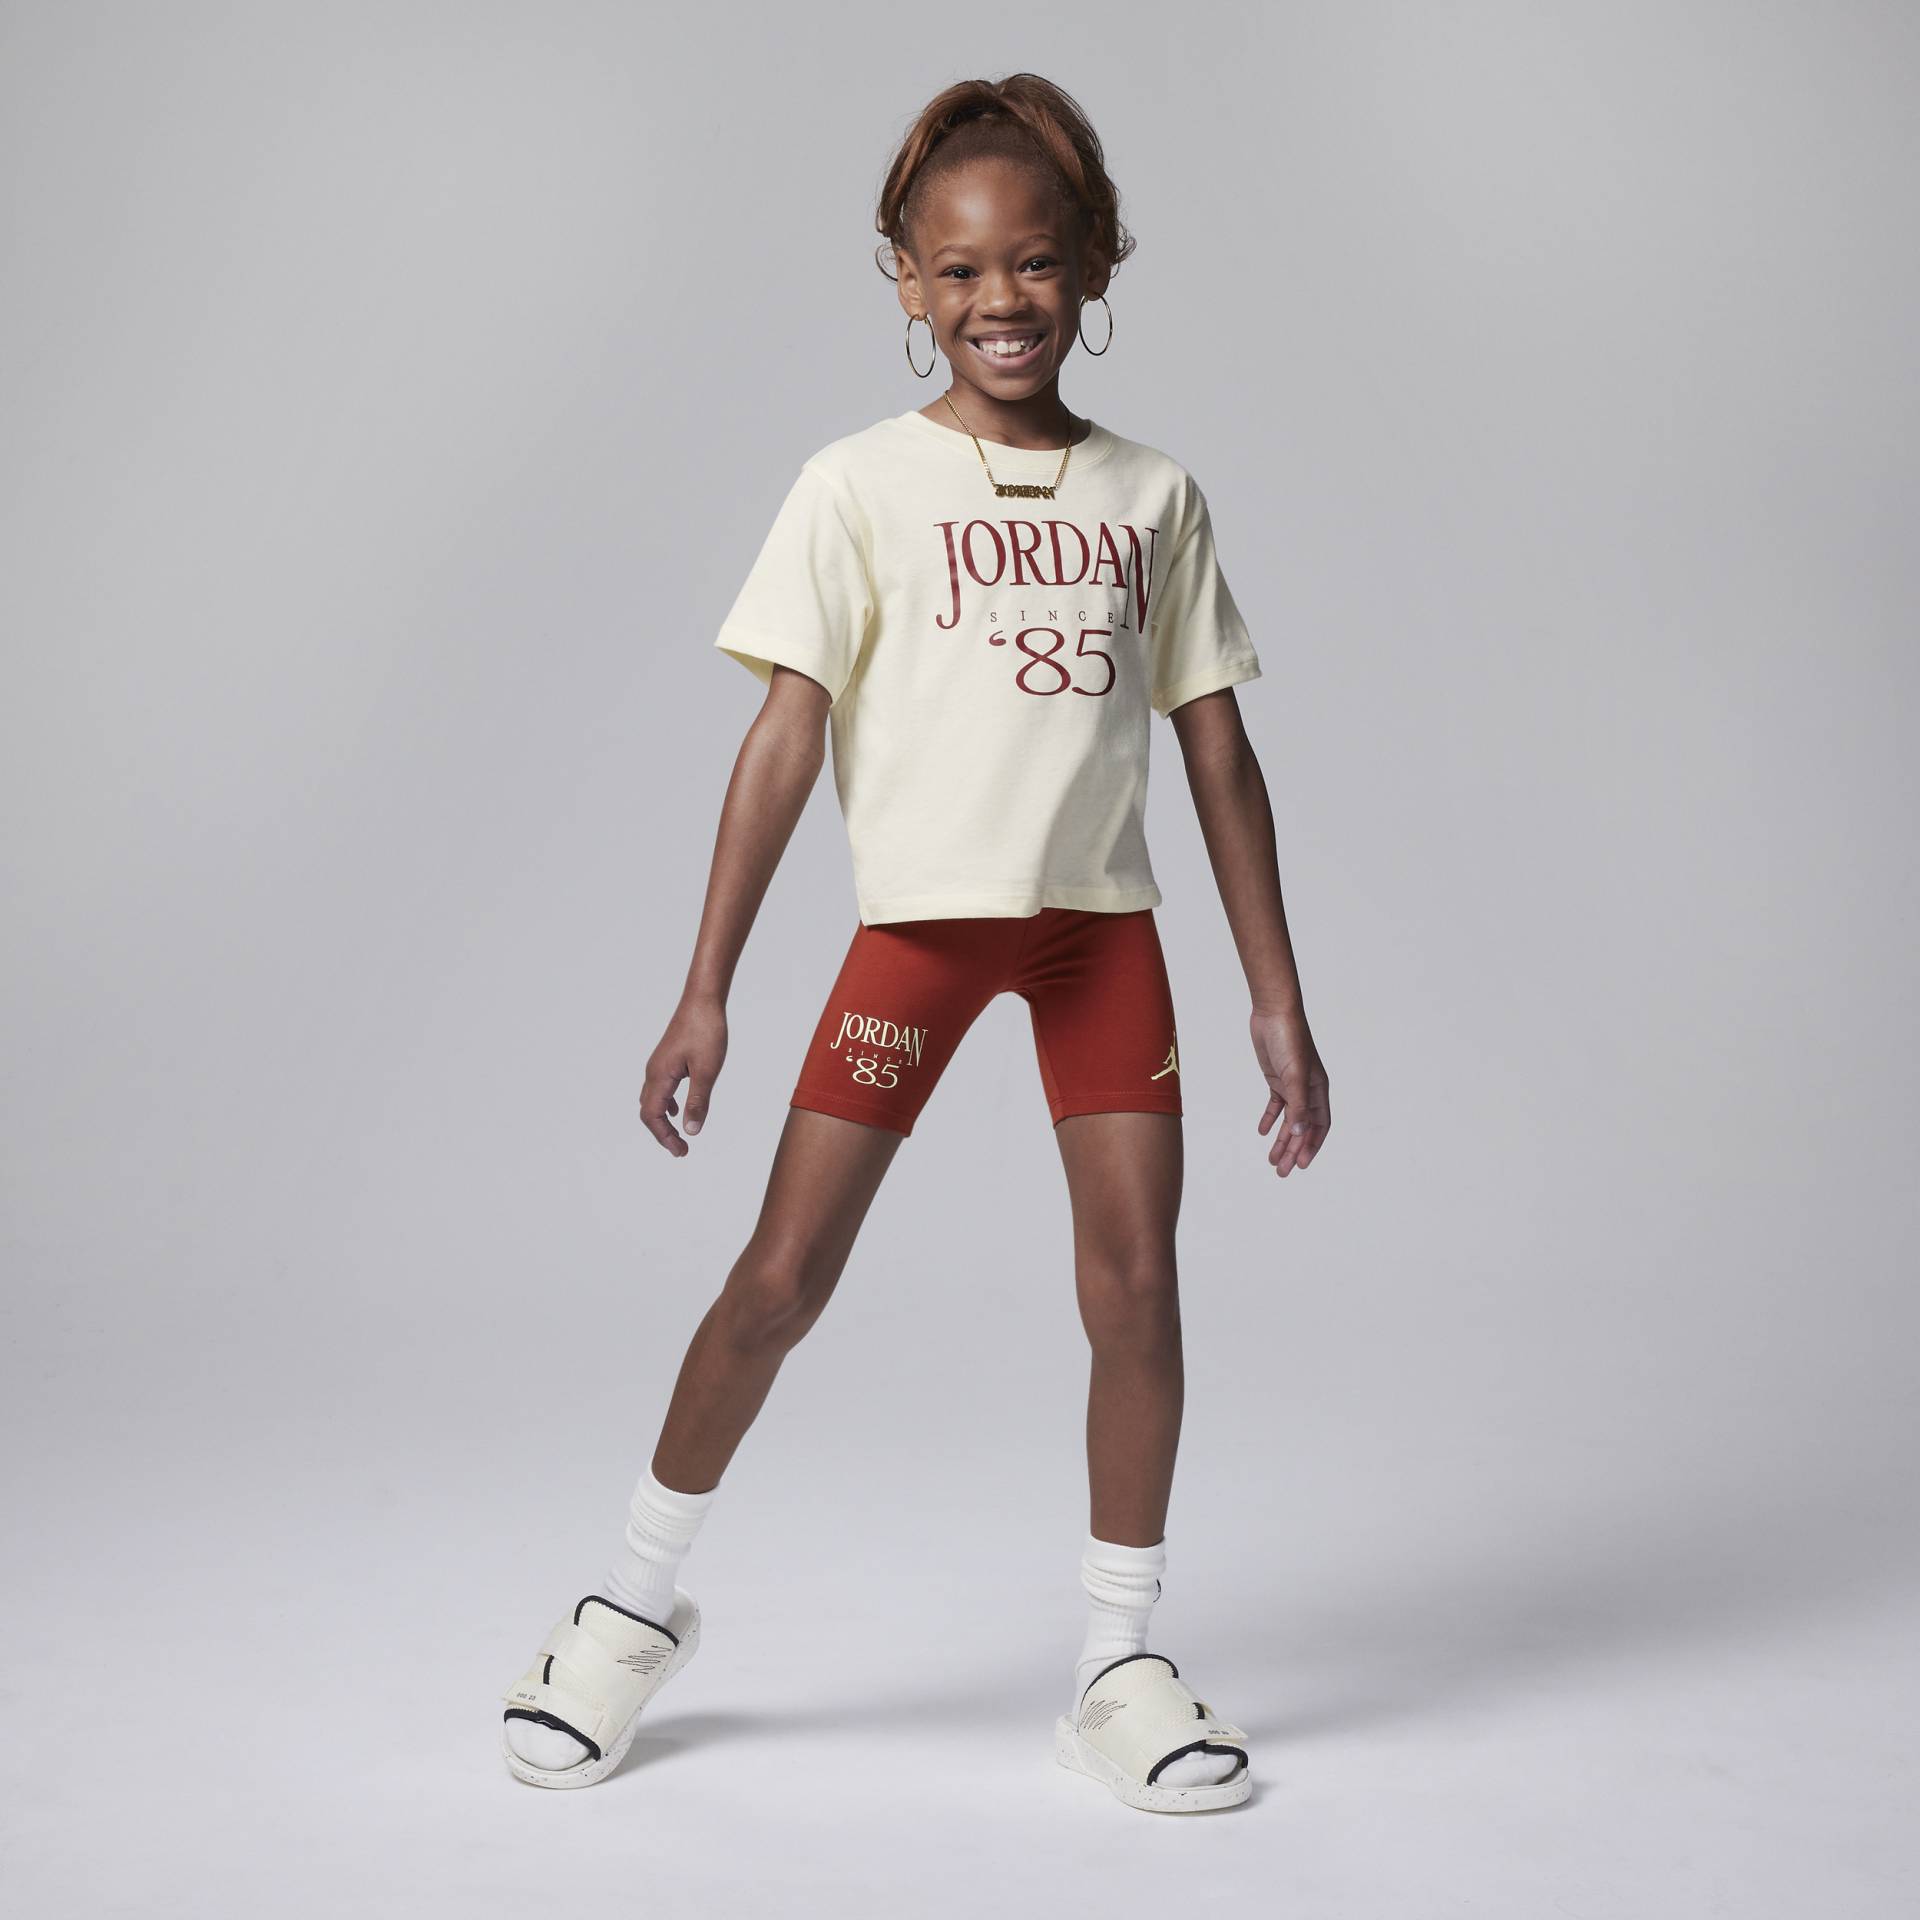 Jordan Brooklyn Mini Me Bike Shorts Set für jüngere Kinder - Rot von Jordan